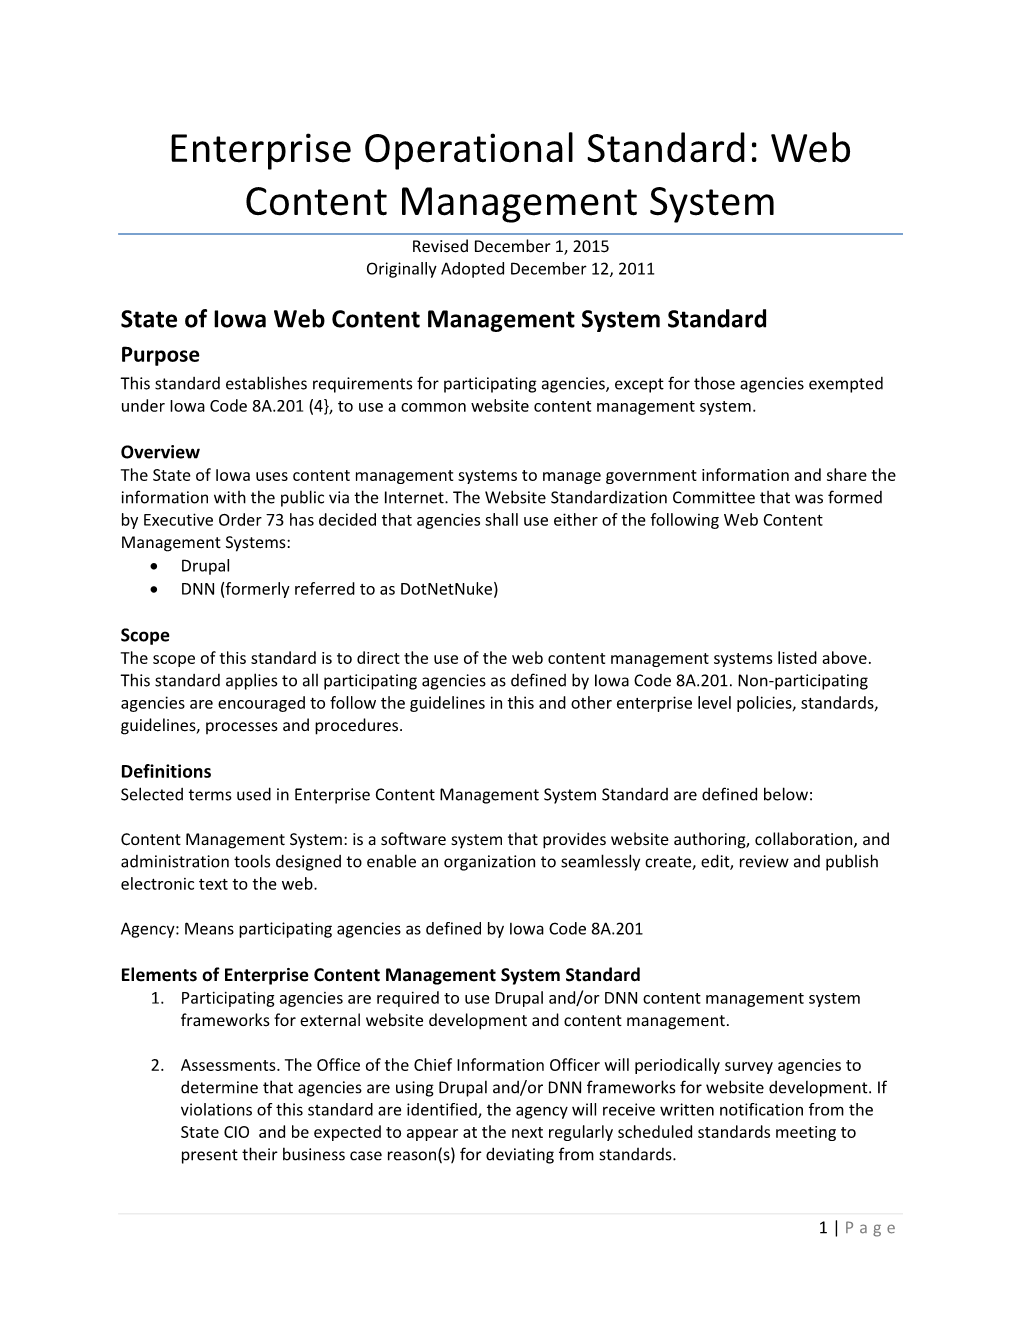 Enterprise Operational Standard: Web Content Management System Revised December 1, 2015 Originally Adopted December 12, 2011